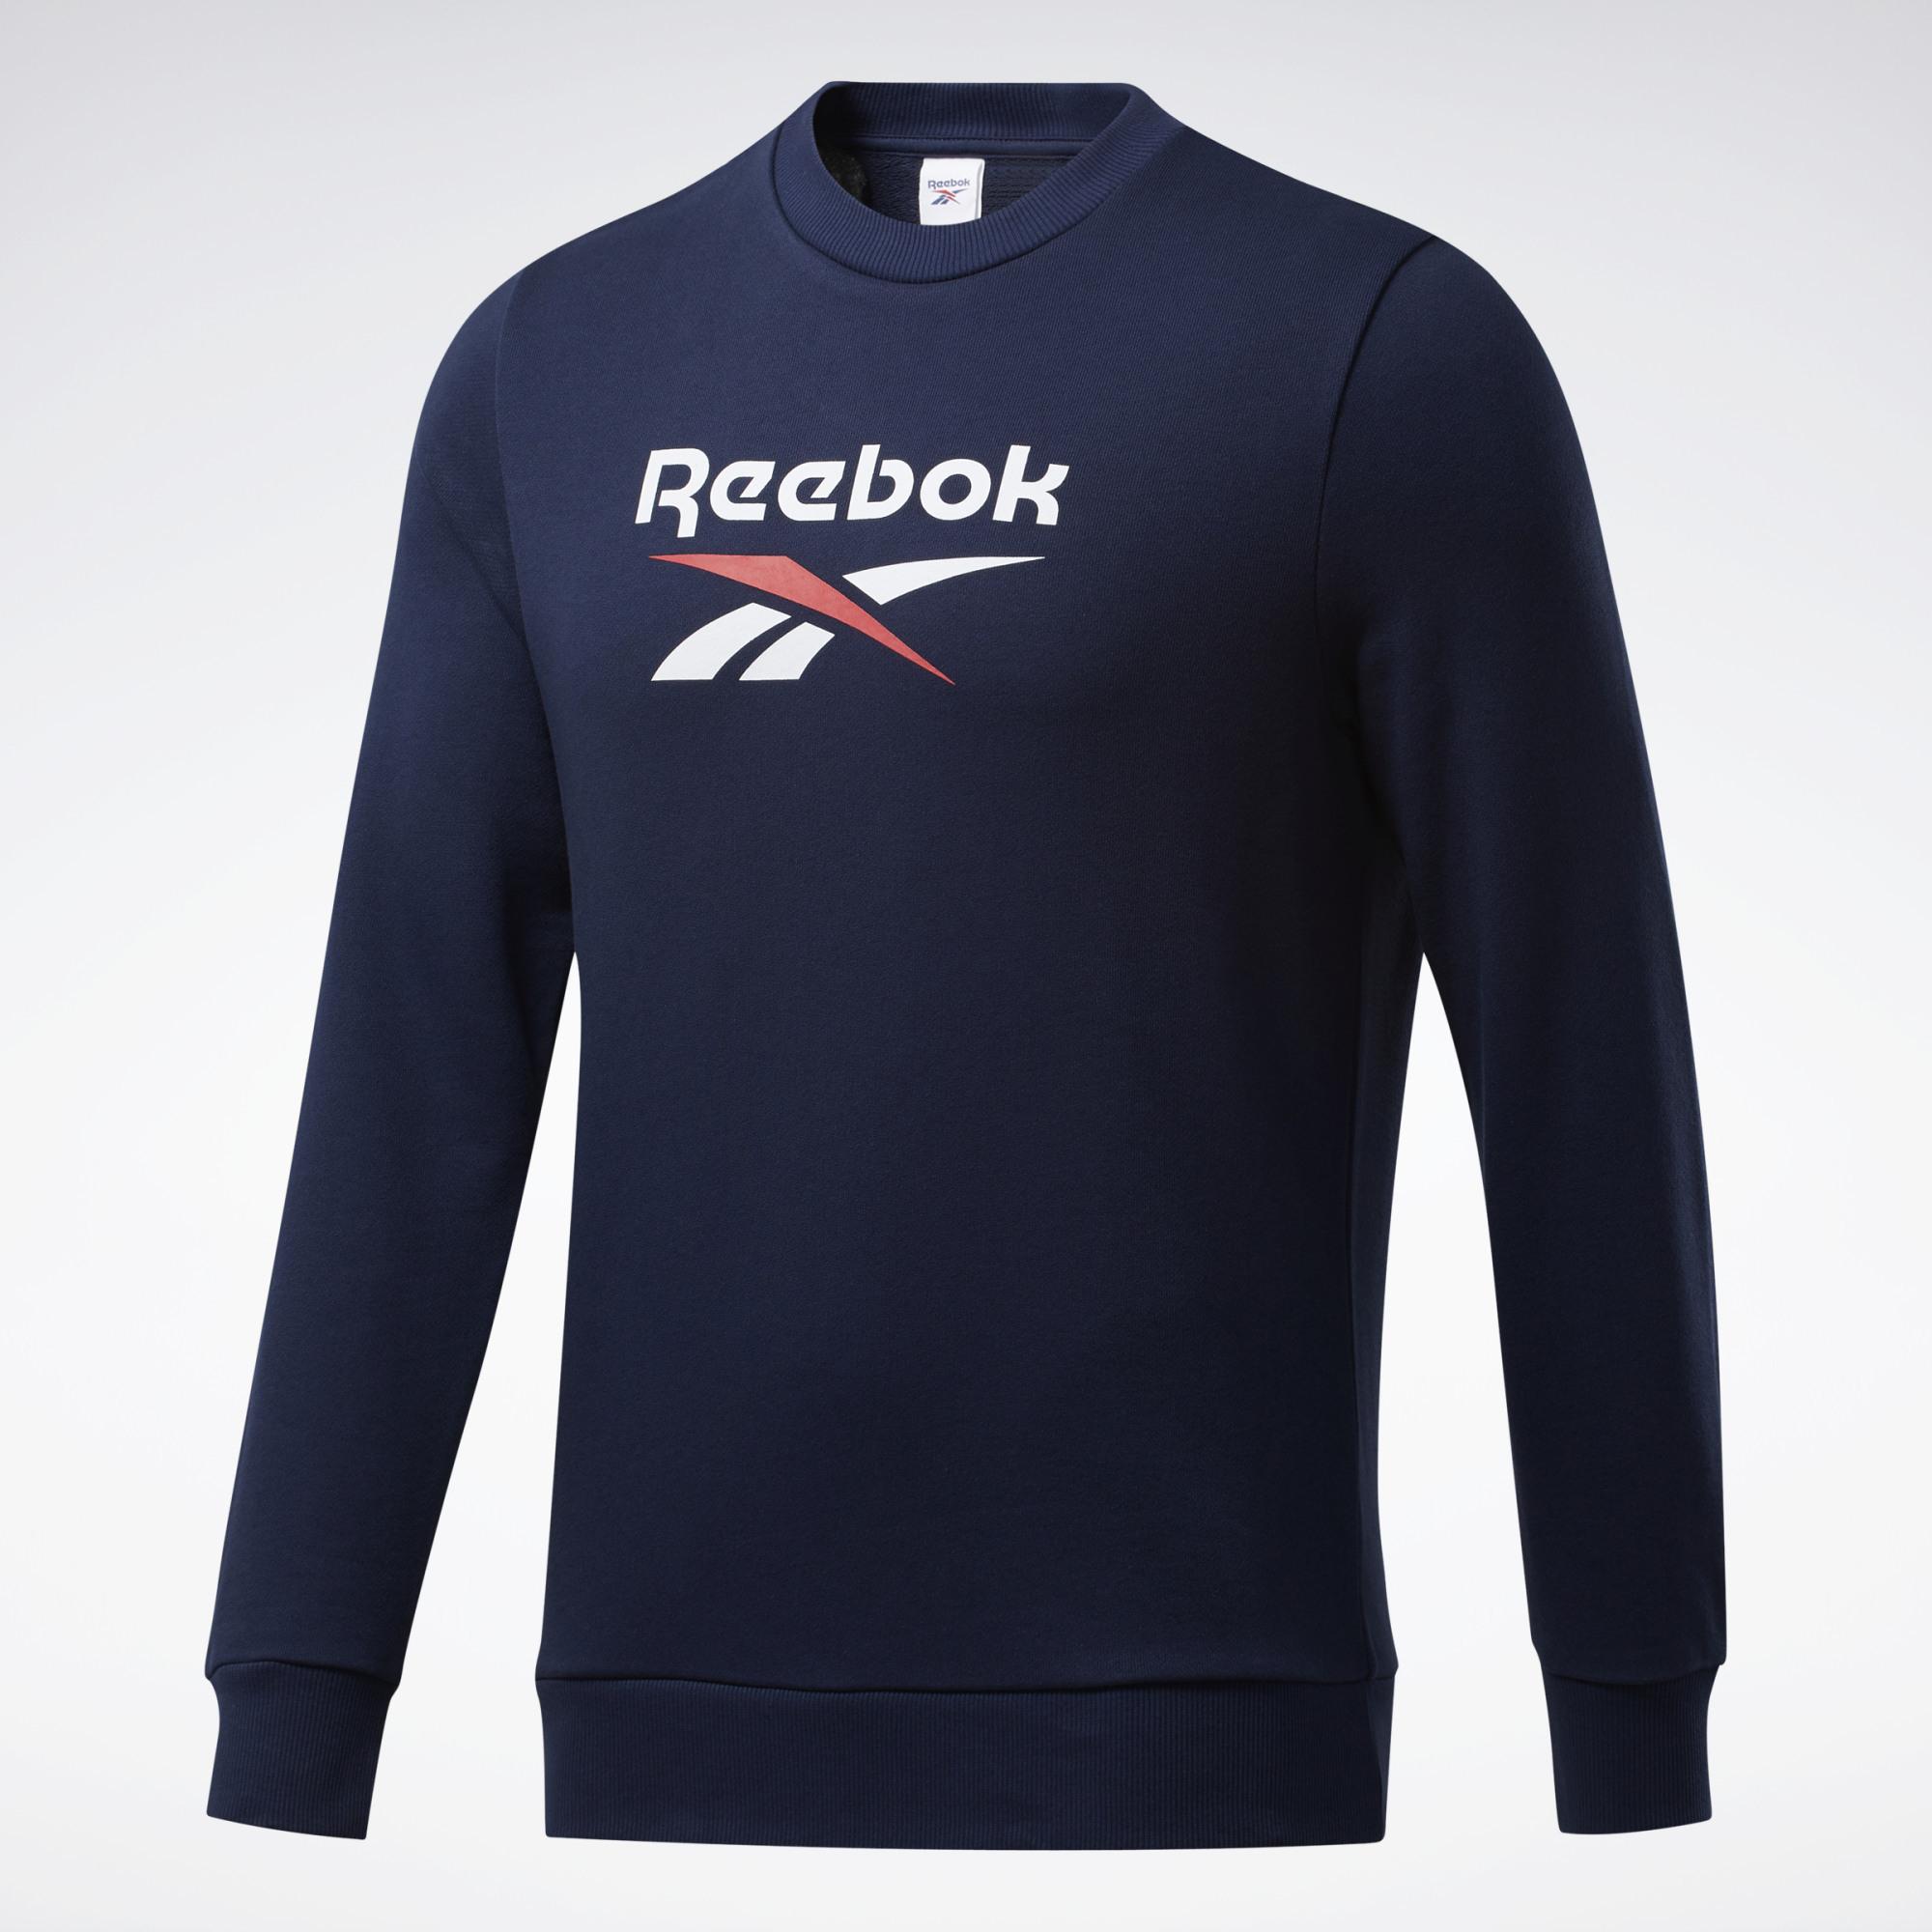 Reebok Sweatshirt Herren Blau im Online Shop von SportScheck kaufen